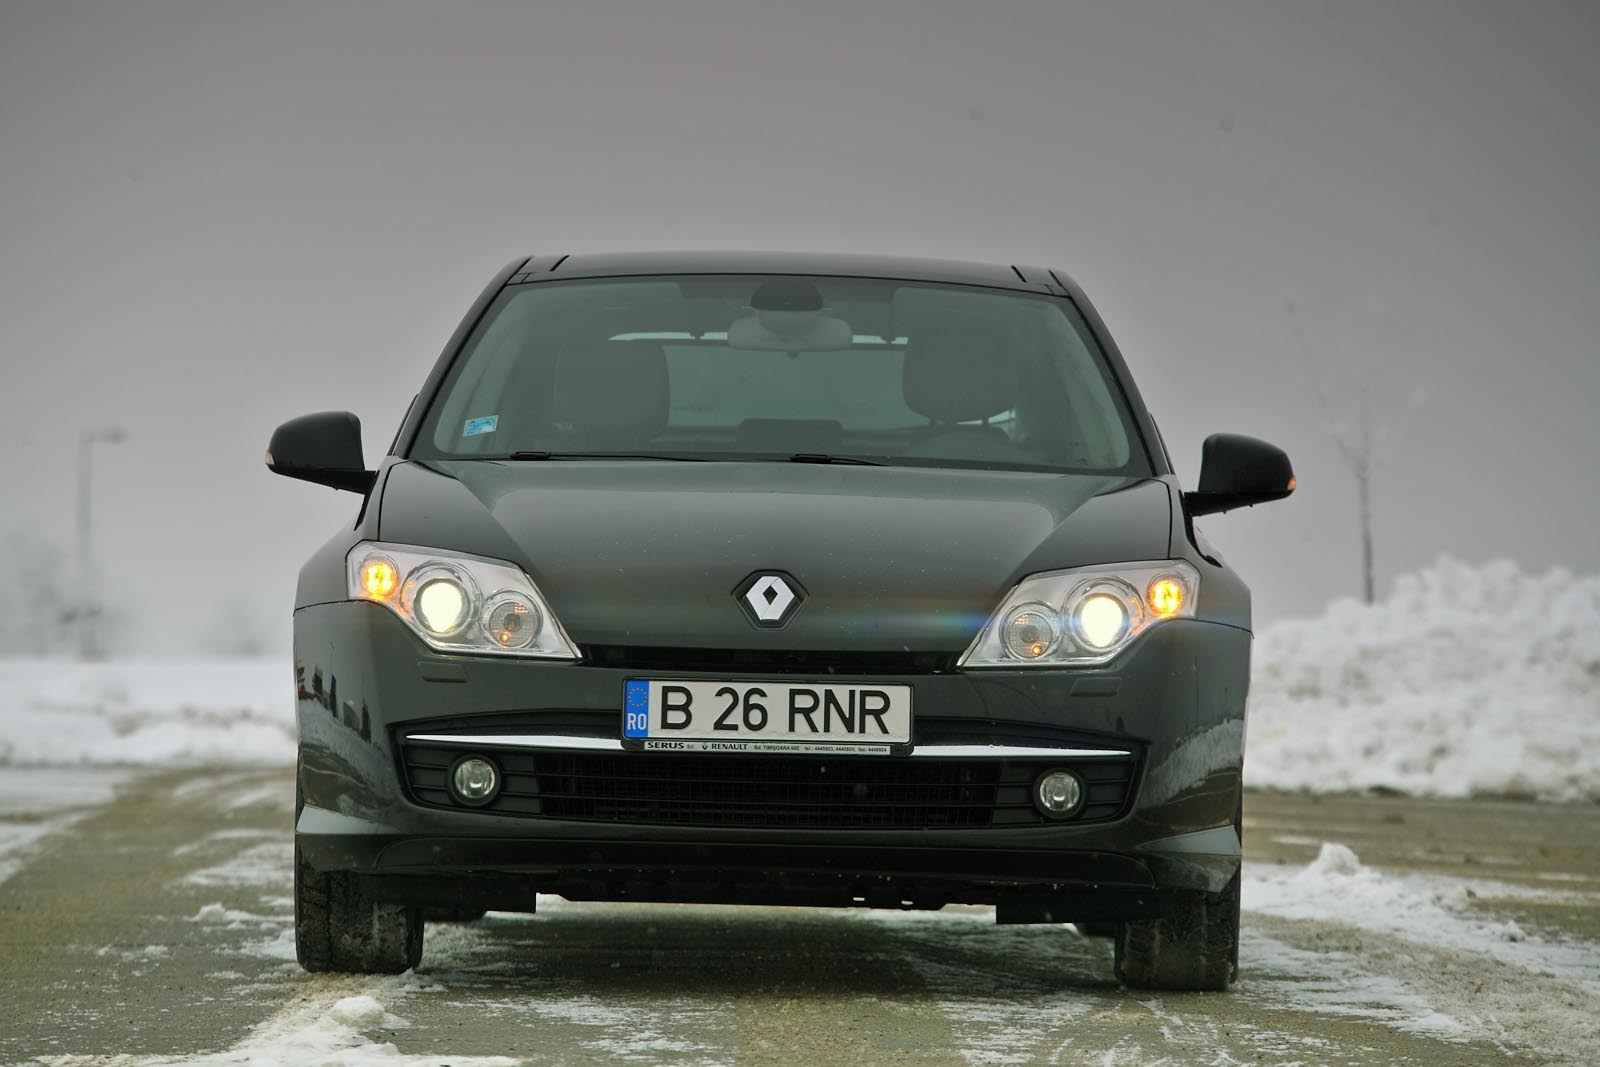 Renault Laguna are, de departe, cel mai bun raport pret/dotari, avand o echipare foarte bogata